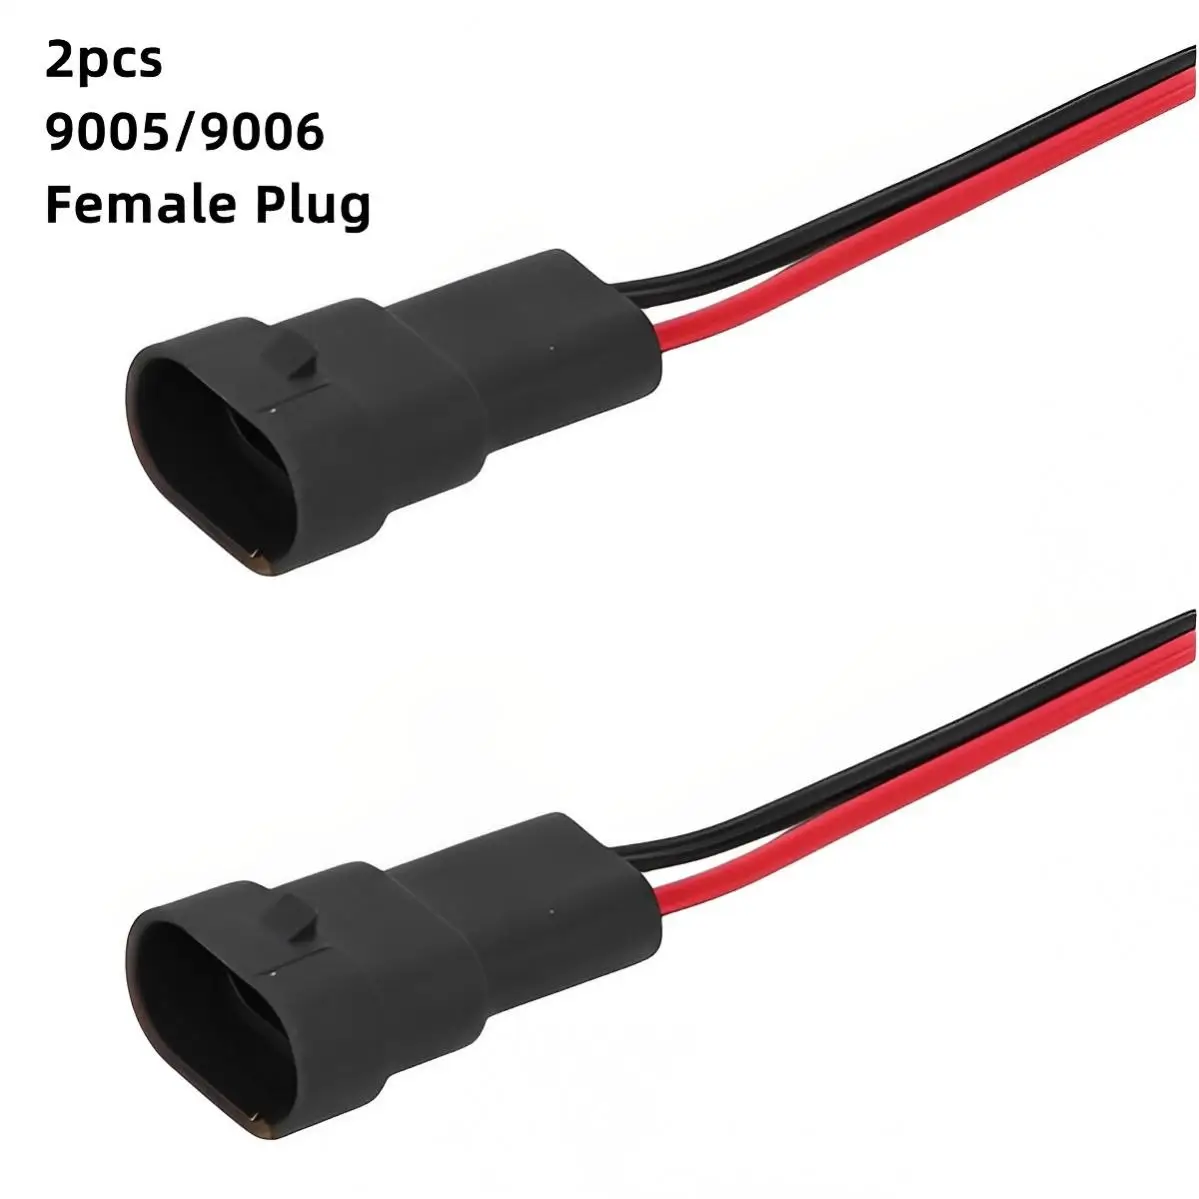 

2pcs 9005 / 9006 12V Female Socket Light Harness Connector Easy Installation for Fog Lamp / Headlight